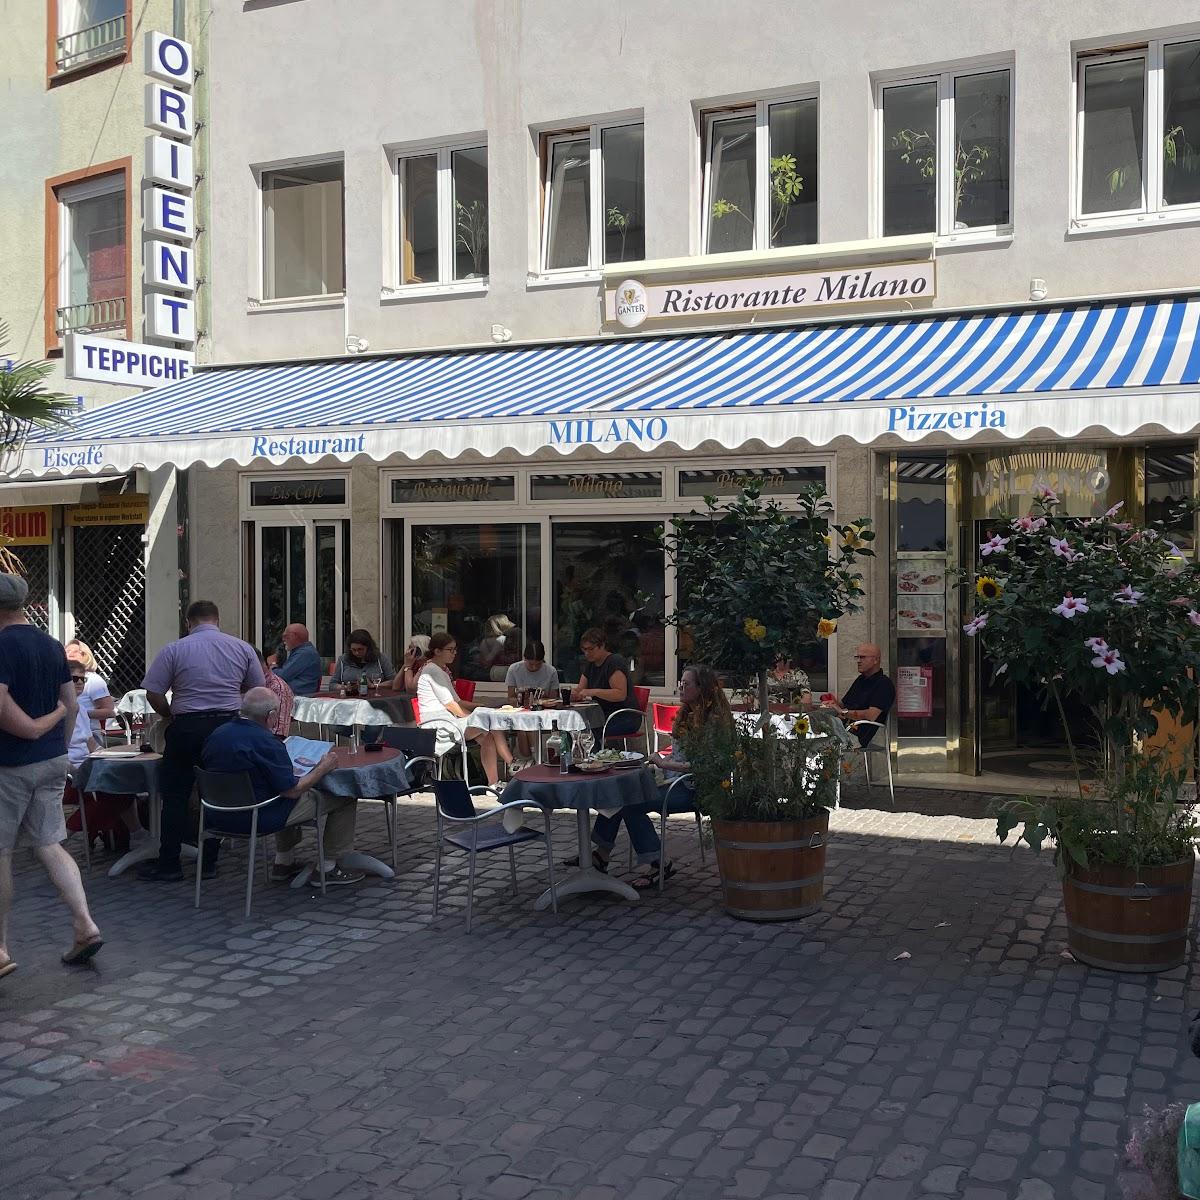 Restaurant "Pizzeria Restorante Milano" in Freiburg im Breisgau